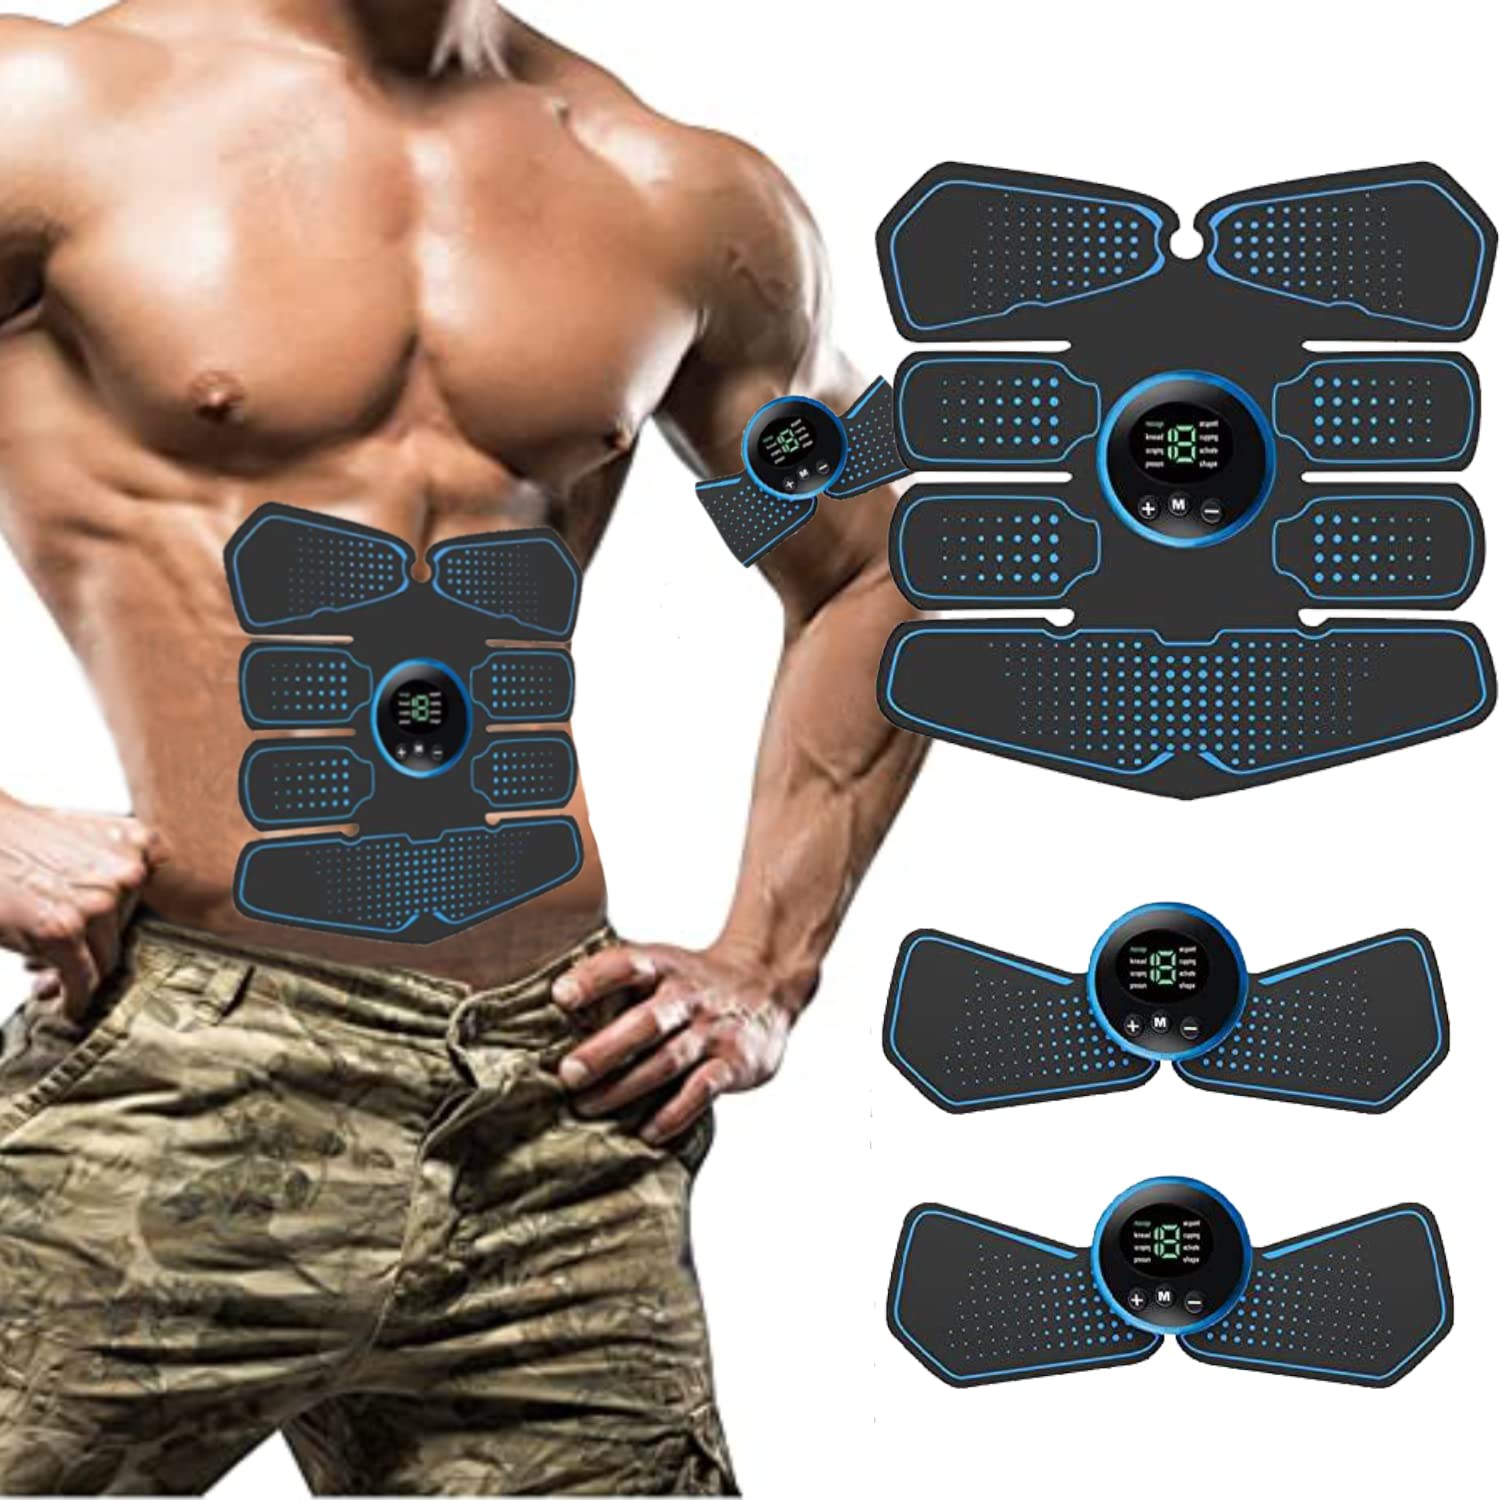 HONGXIAN EMS Bauchmuskeltrainer LCD Bildschirm muskelstimulator USB Wiederaufladbarer,EMS Elektrische Muskelstimulation,8 Modi & 19 Intensitäten